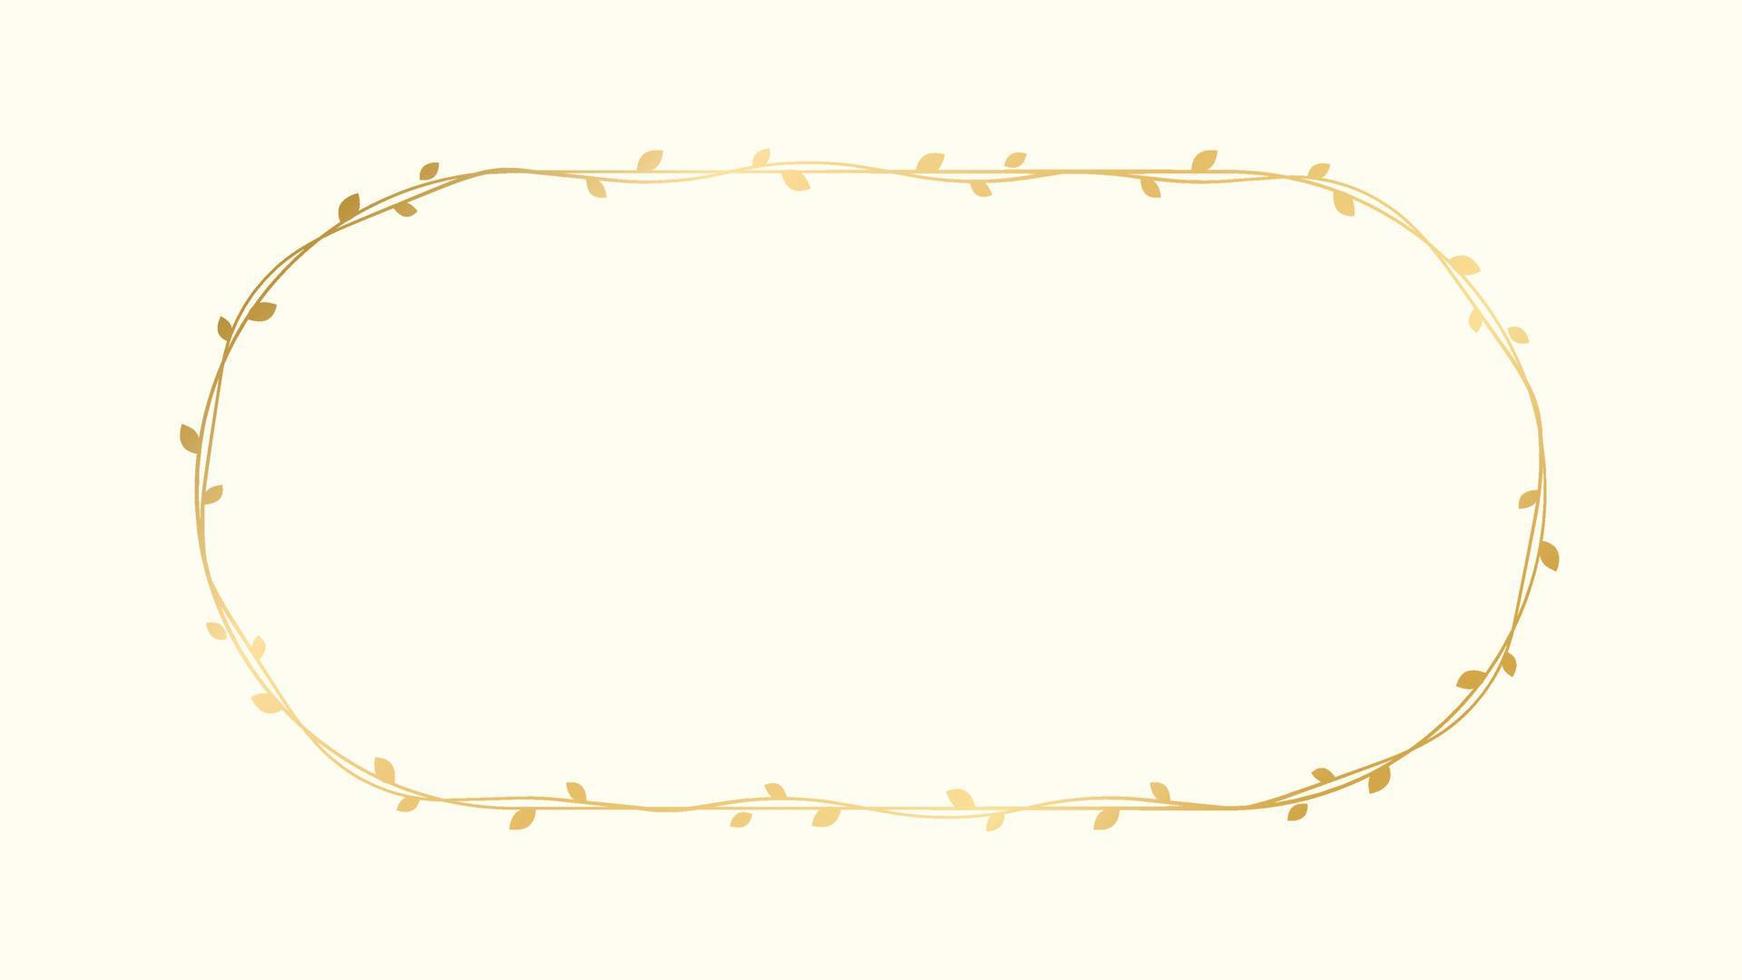 ovaal gouden kader met botanisch ontwerp. ronde Liaan kader bruiloft elegant lauwerkrans. vector geïsoleerd illustratie.